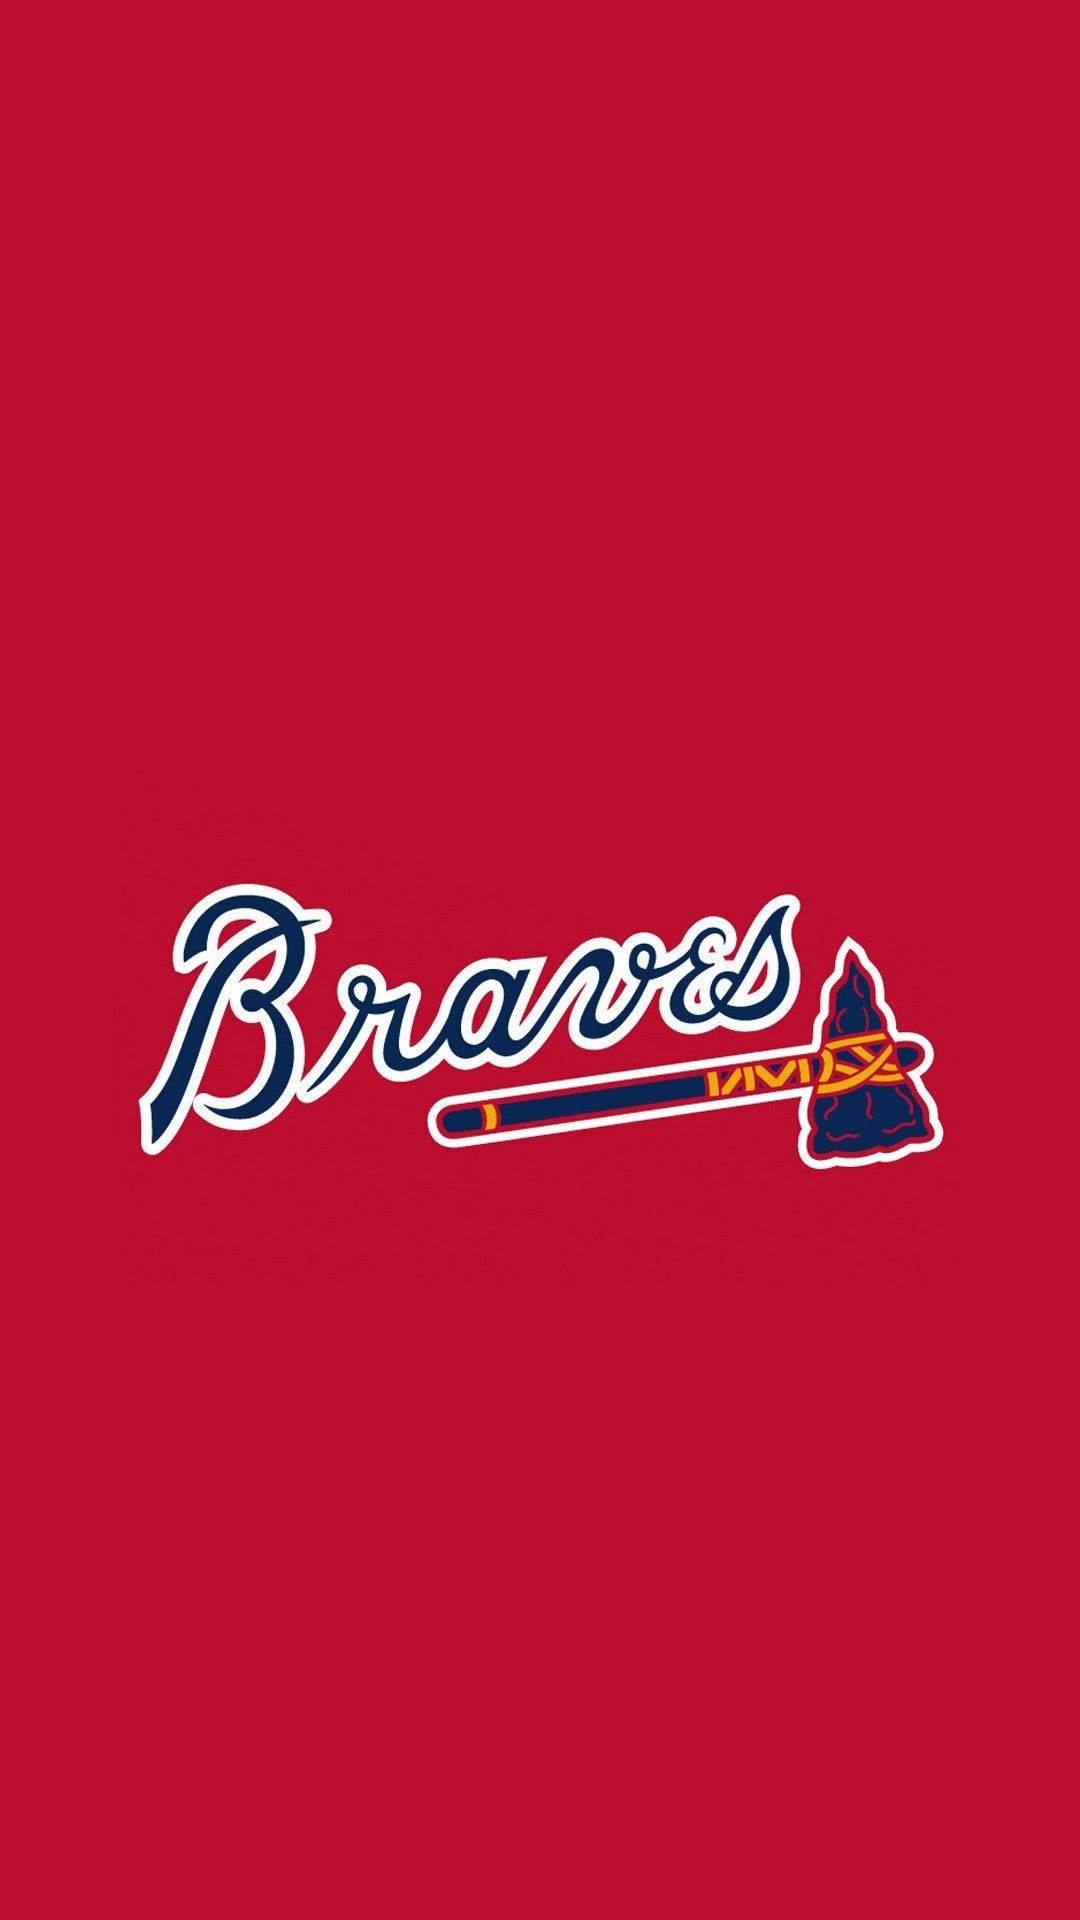 braves logo wallpaper